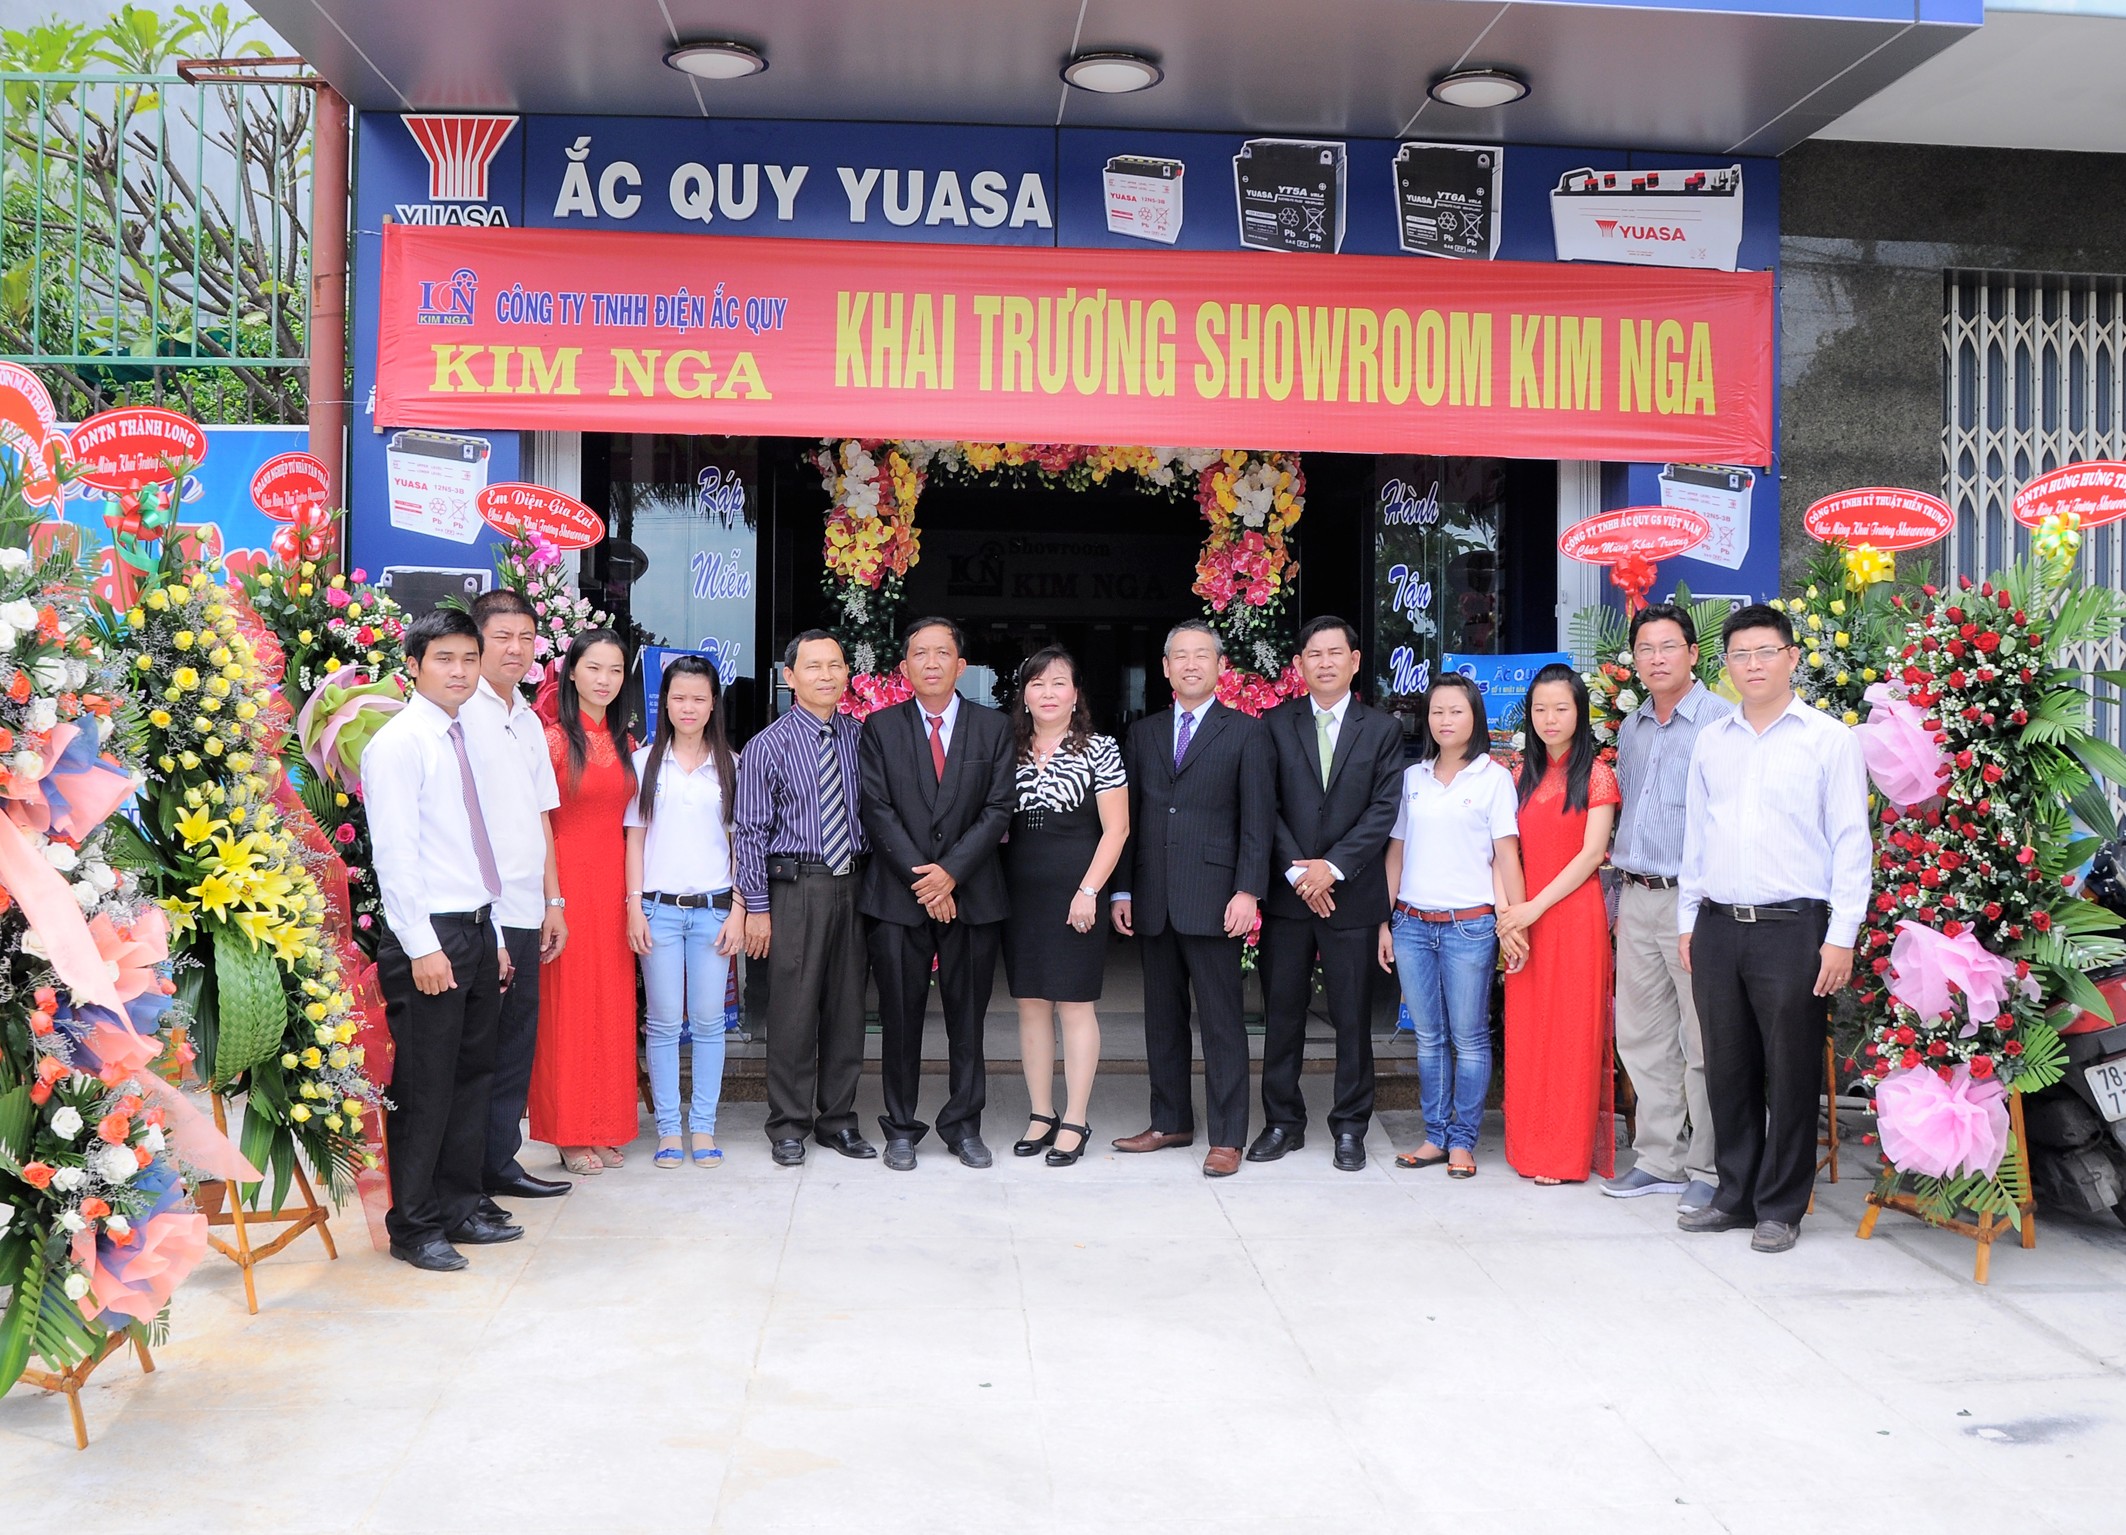 Yuasa showroom opening ceremony & retail shop conference of GS & Yuasa battery in Phu Yen province (Kim Nga dealer)